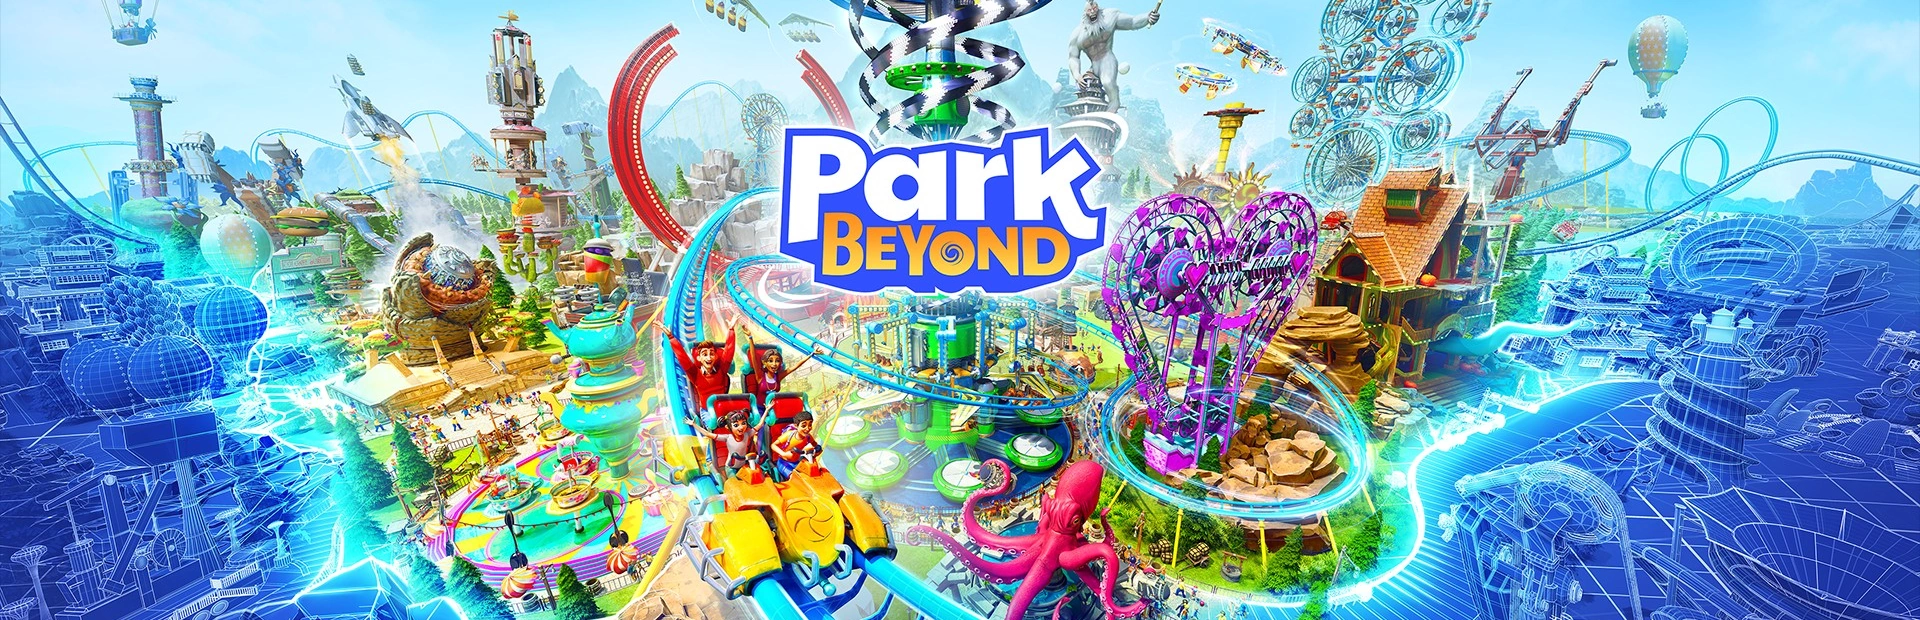 دانلود بازی Park Beyond برای کامپیوتر | گیمباتو